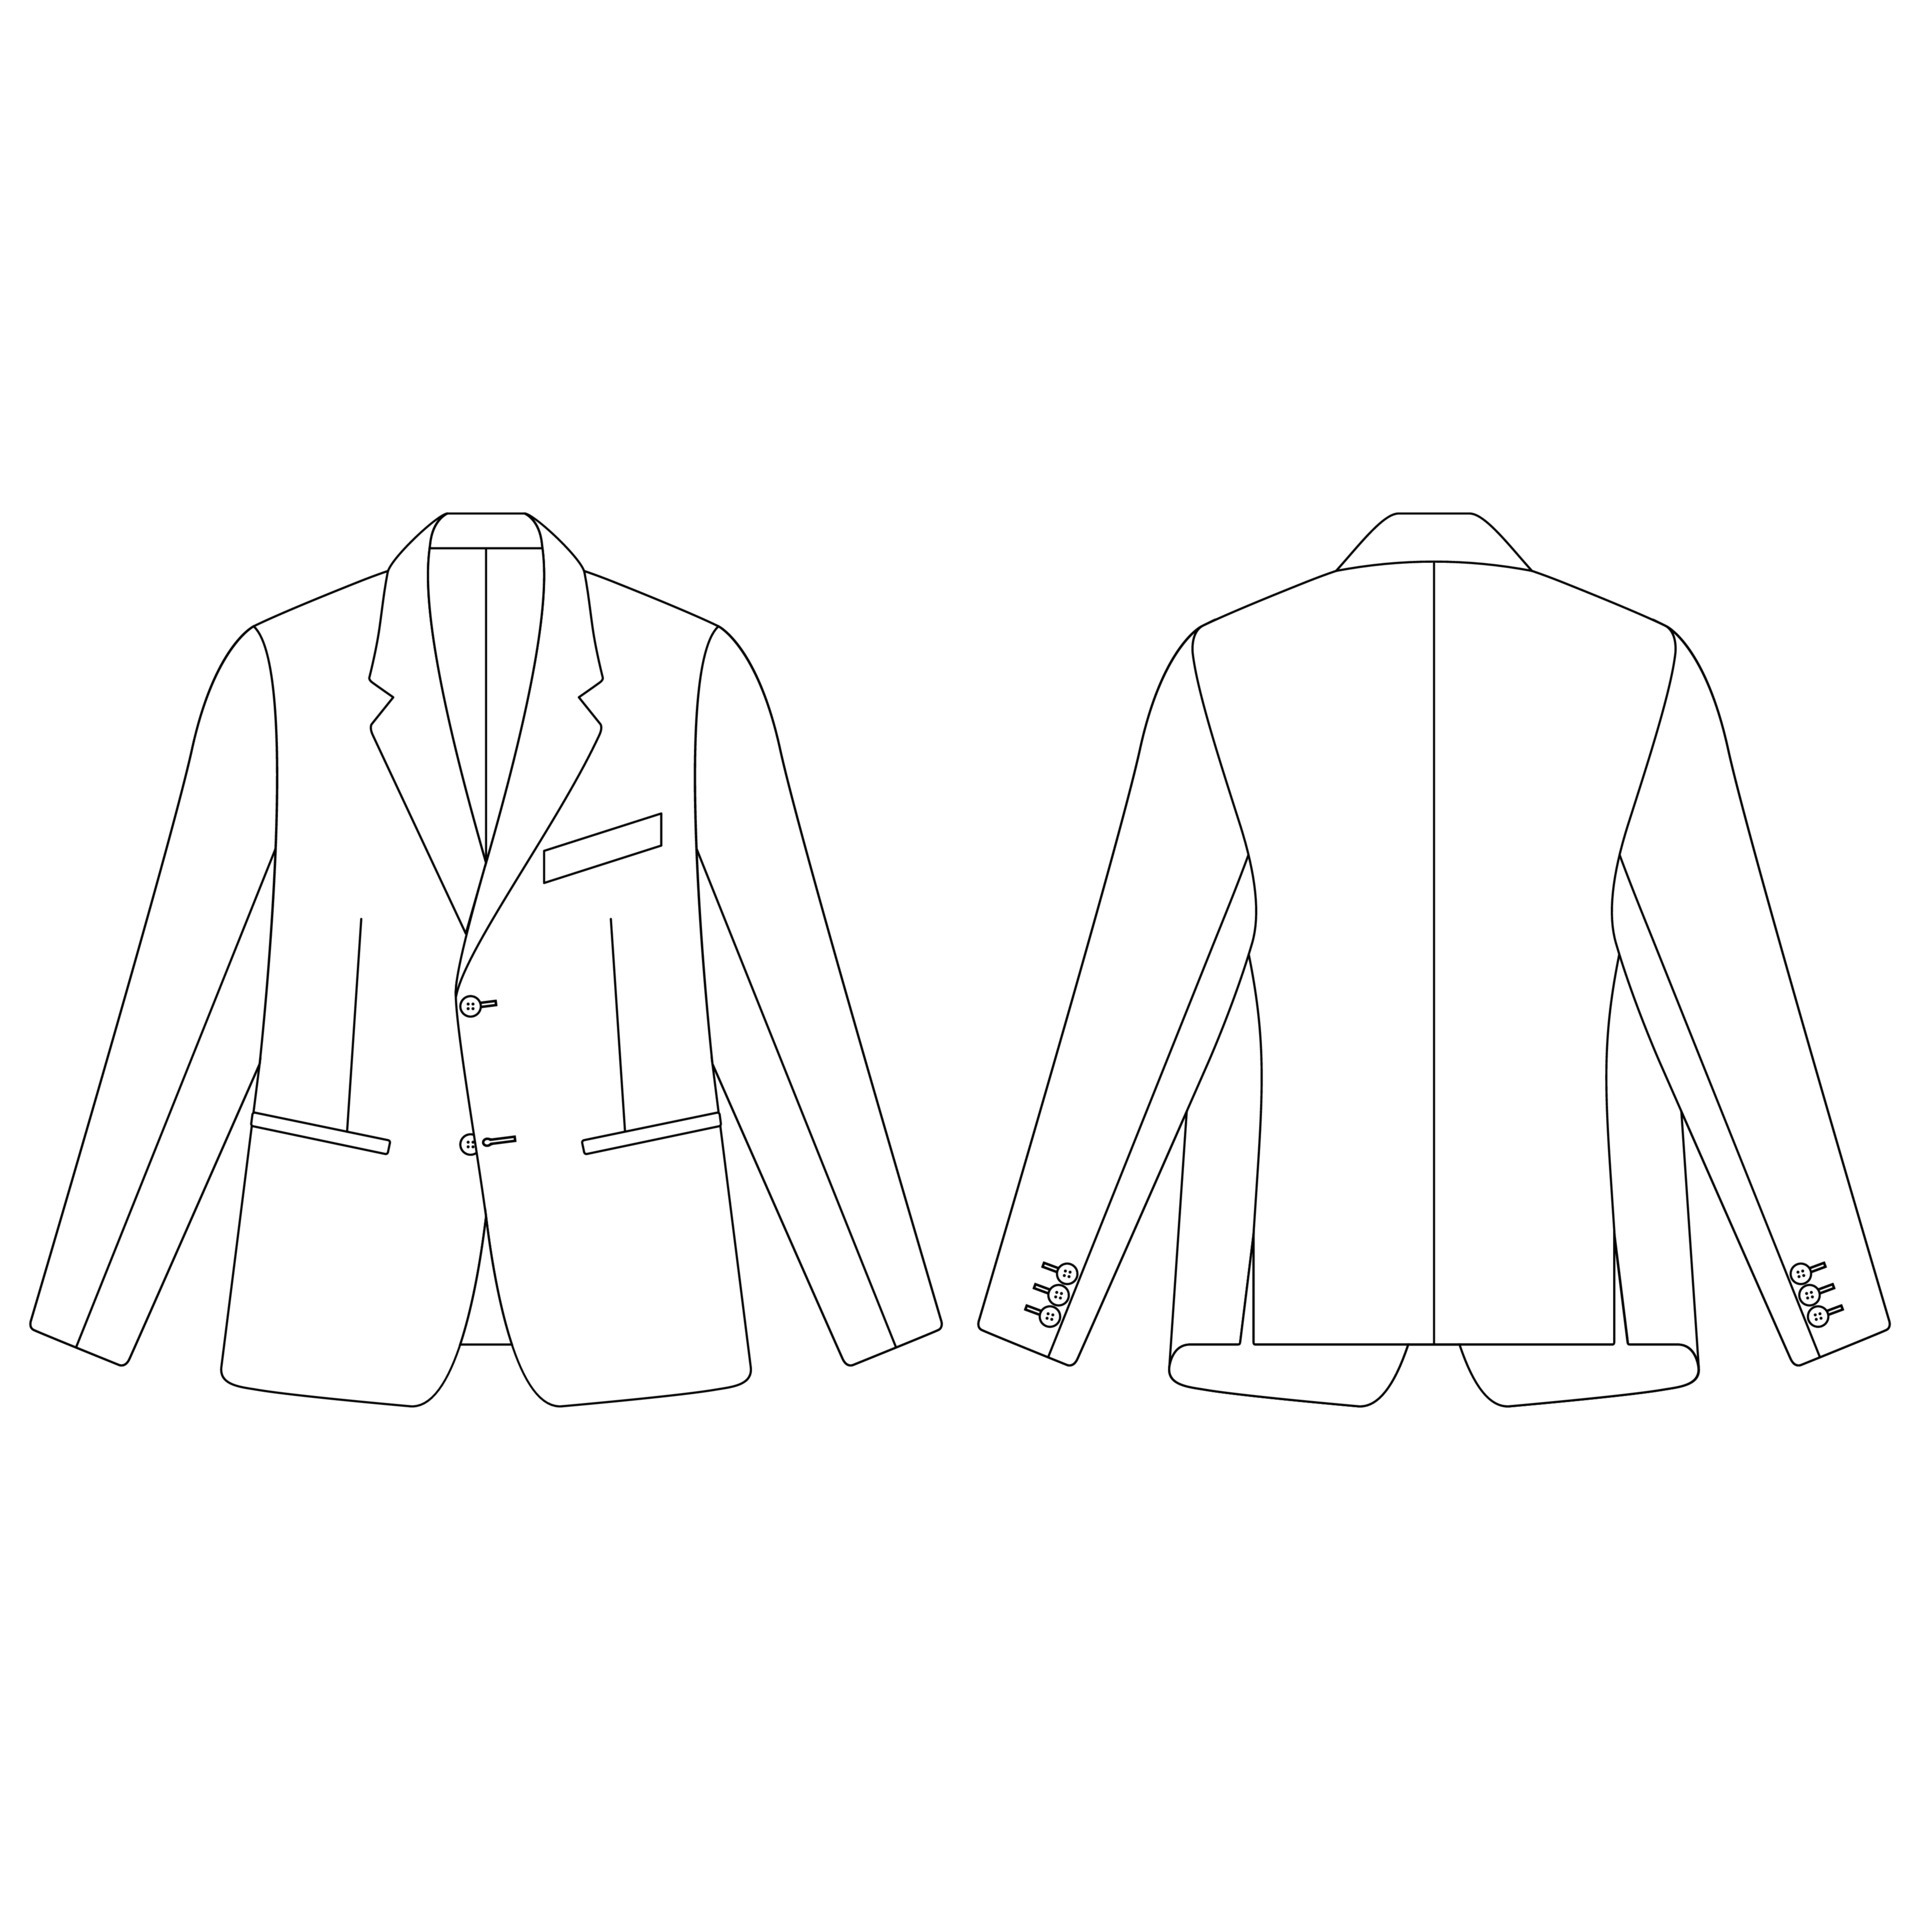 Template jetted pockets blazer vector illustration flat design outline ...